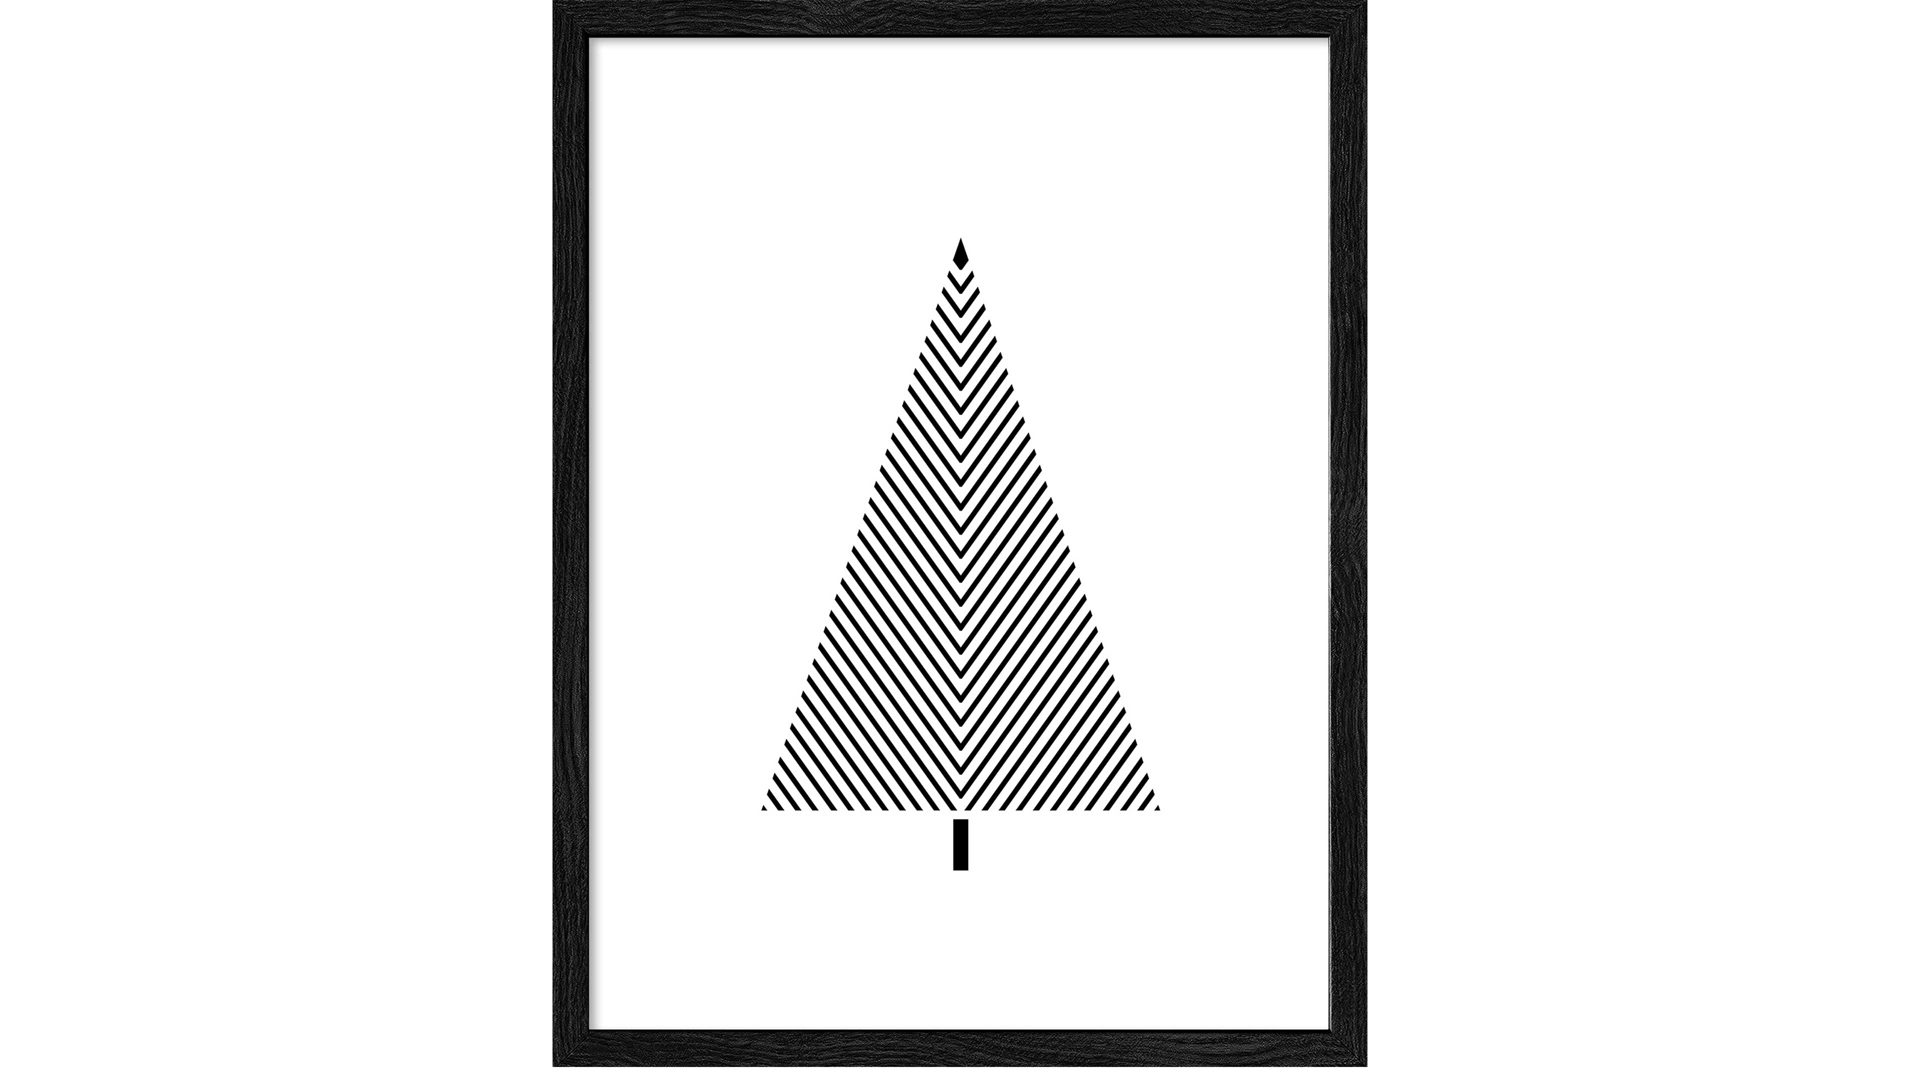 Kunstdruck Pro®art bilderpalette aus Karton / Papier / Pappe in Weiß PRO®ART Kunstdruck Christmas 5 Weiß & Schwarz - ca. 33 x 43 cm